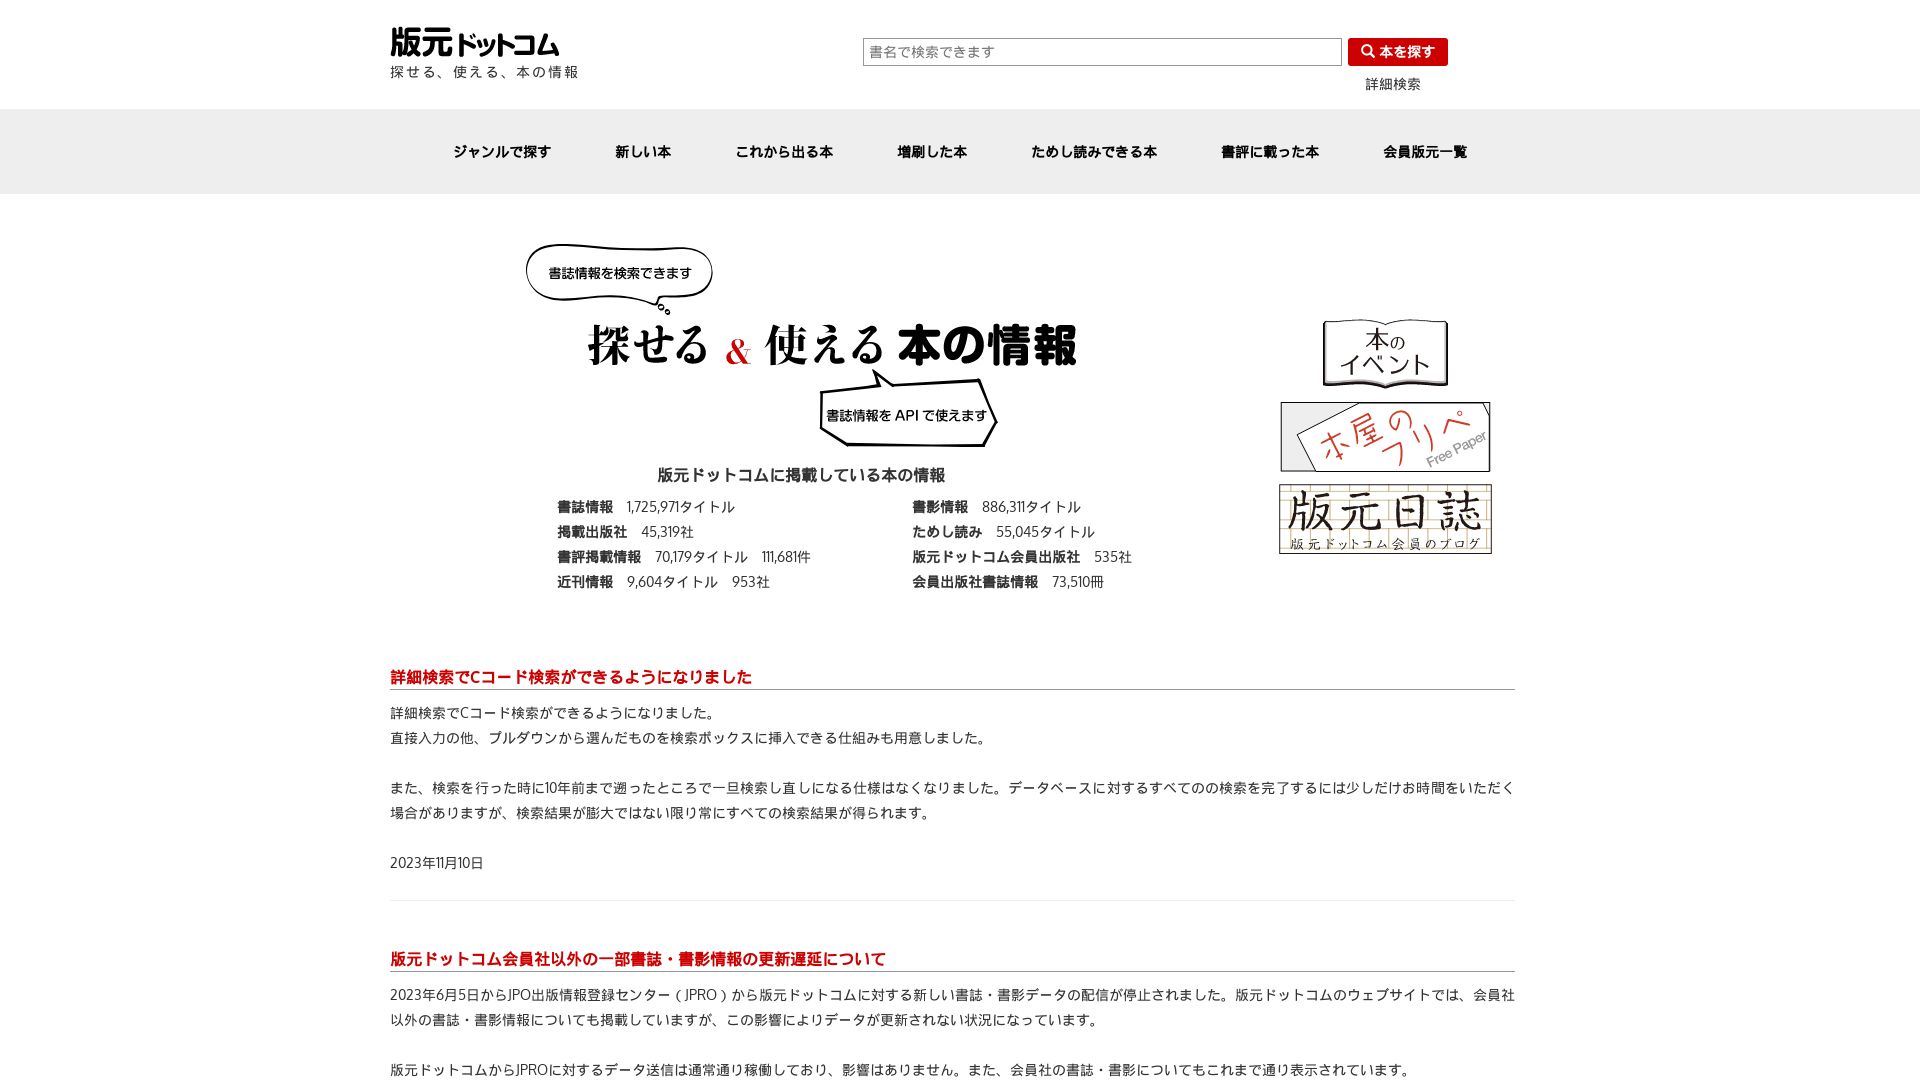 Website status hanmoto.com is   ONLINE